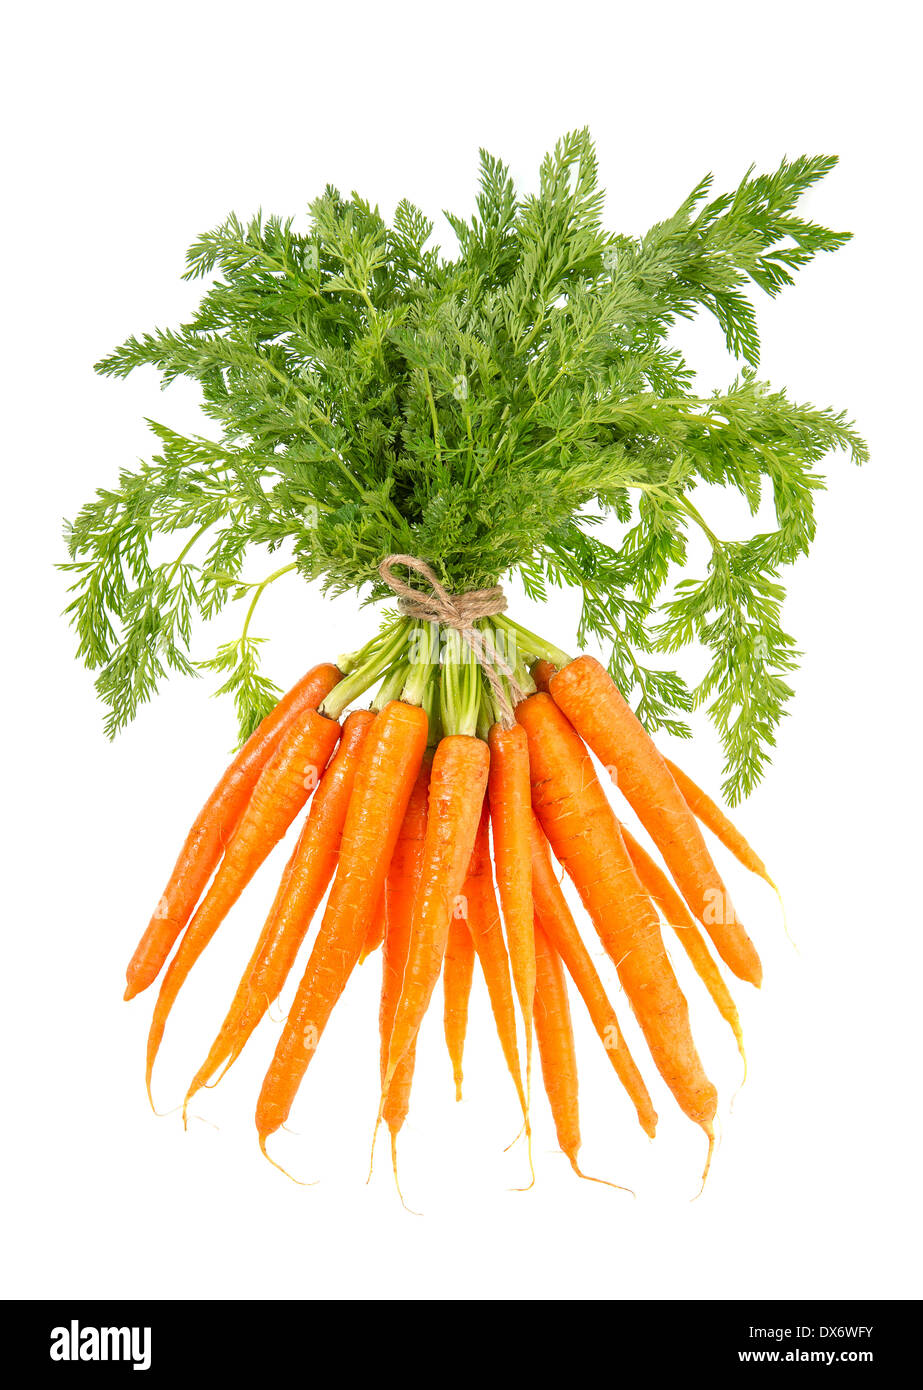 Botte de carottes fraîches avec des feuilles vertes isolé sur fond blanc. Légume. L'alimentation Banque D'Images